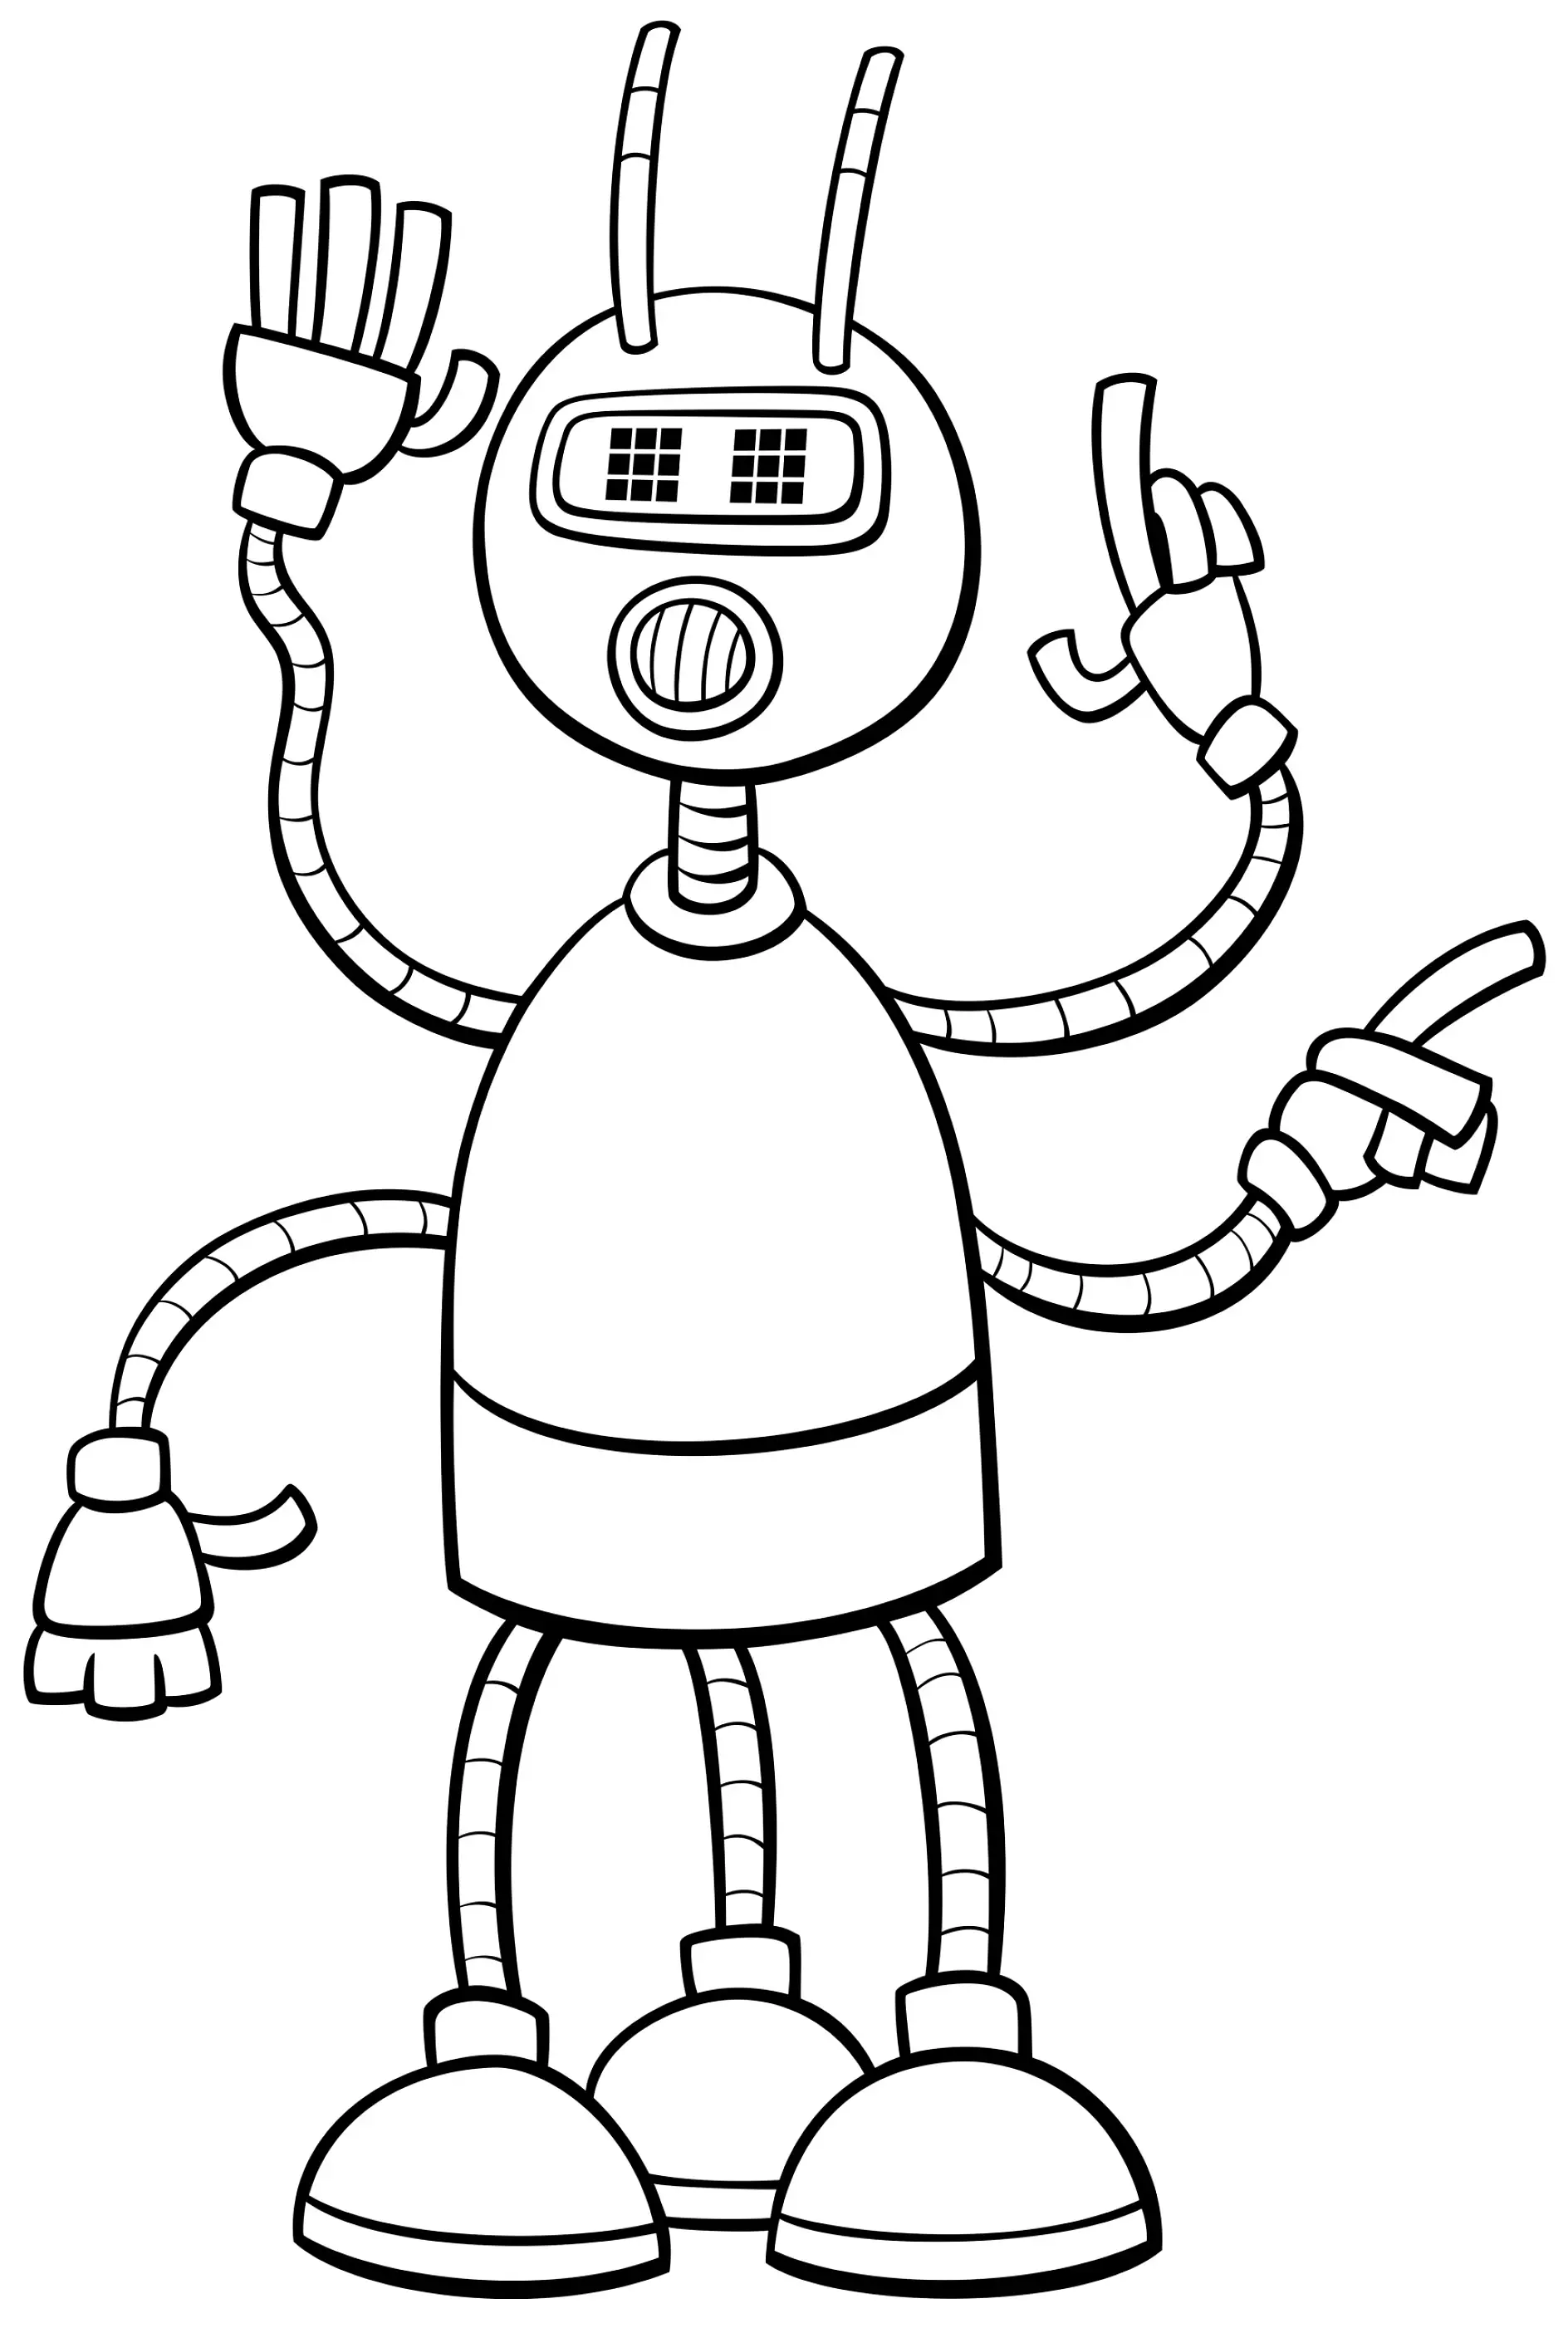 Ausmalbild Roboter mit vier Armen und Antennenkopf